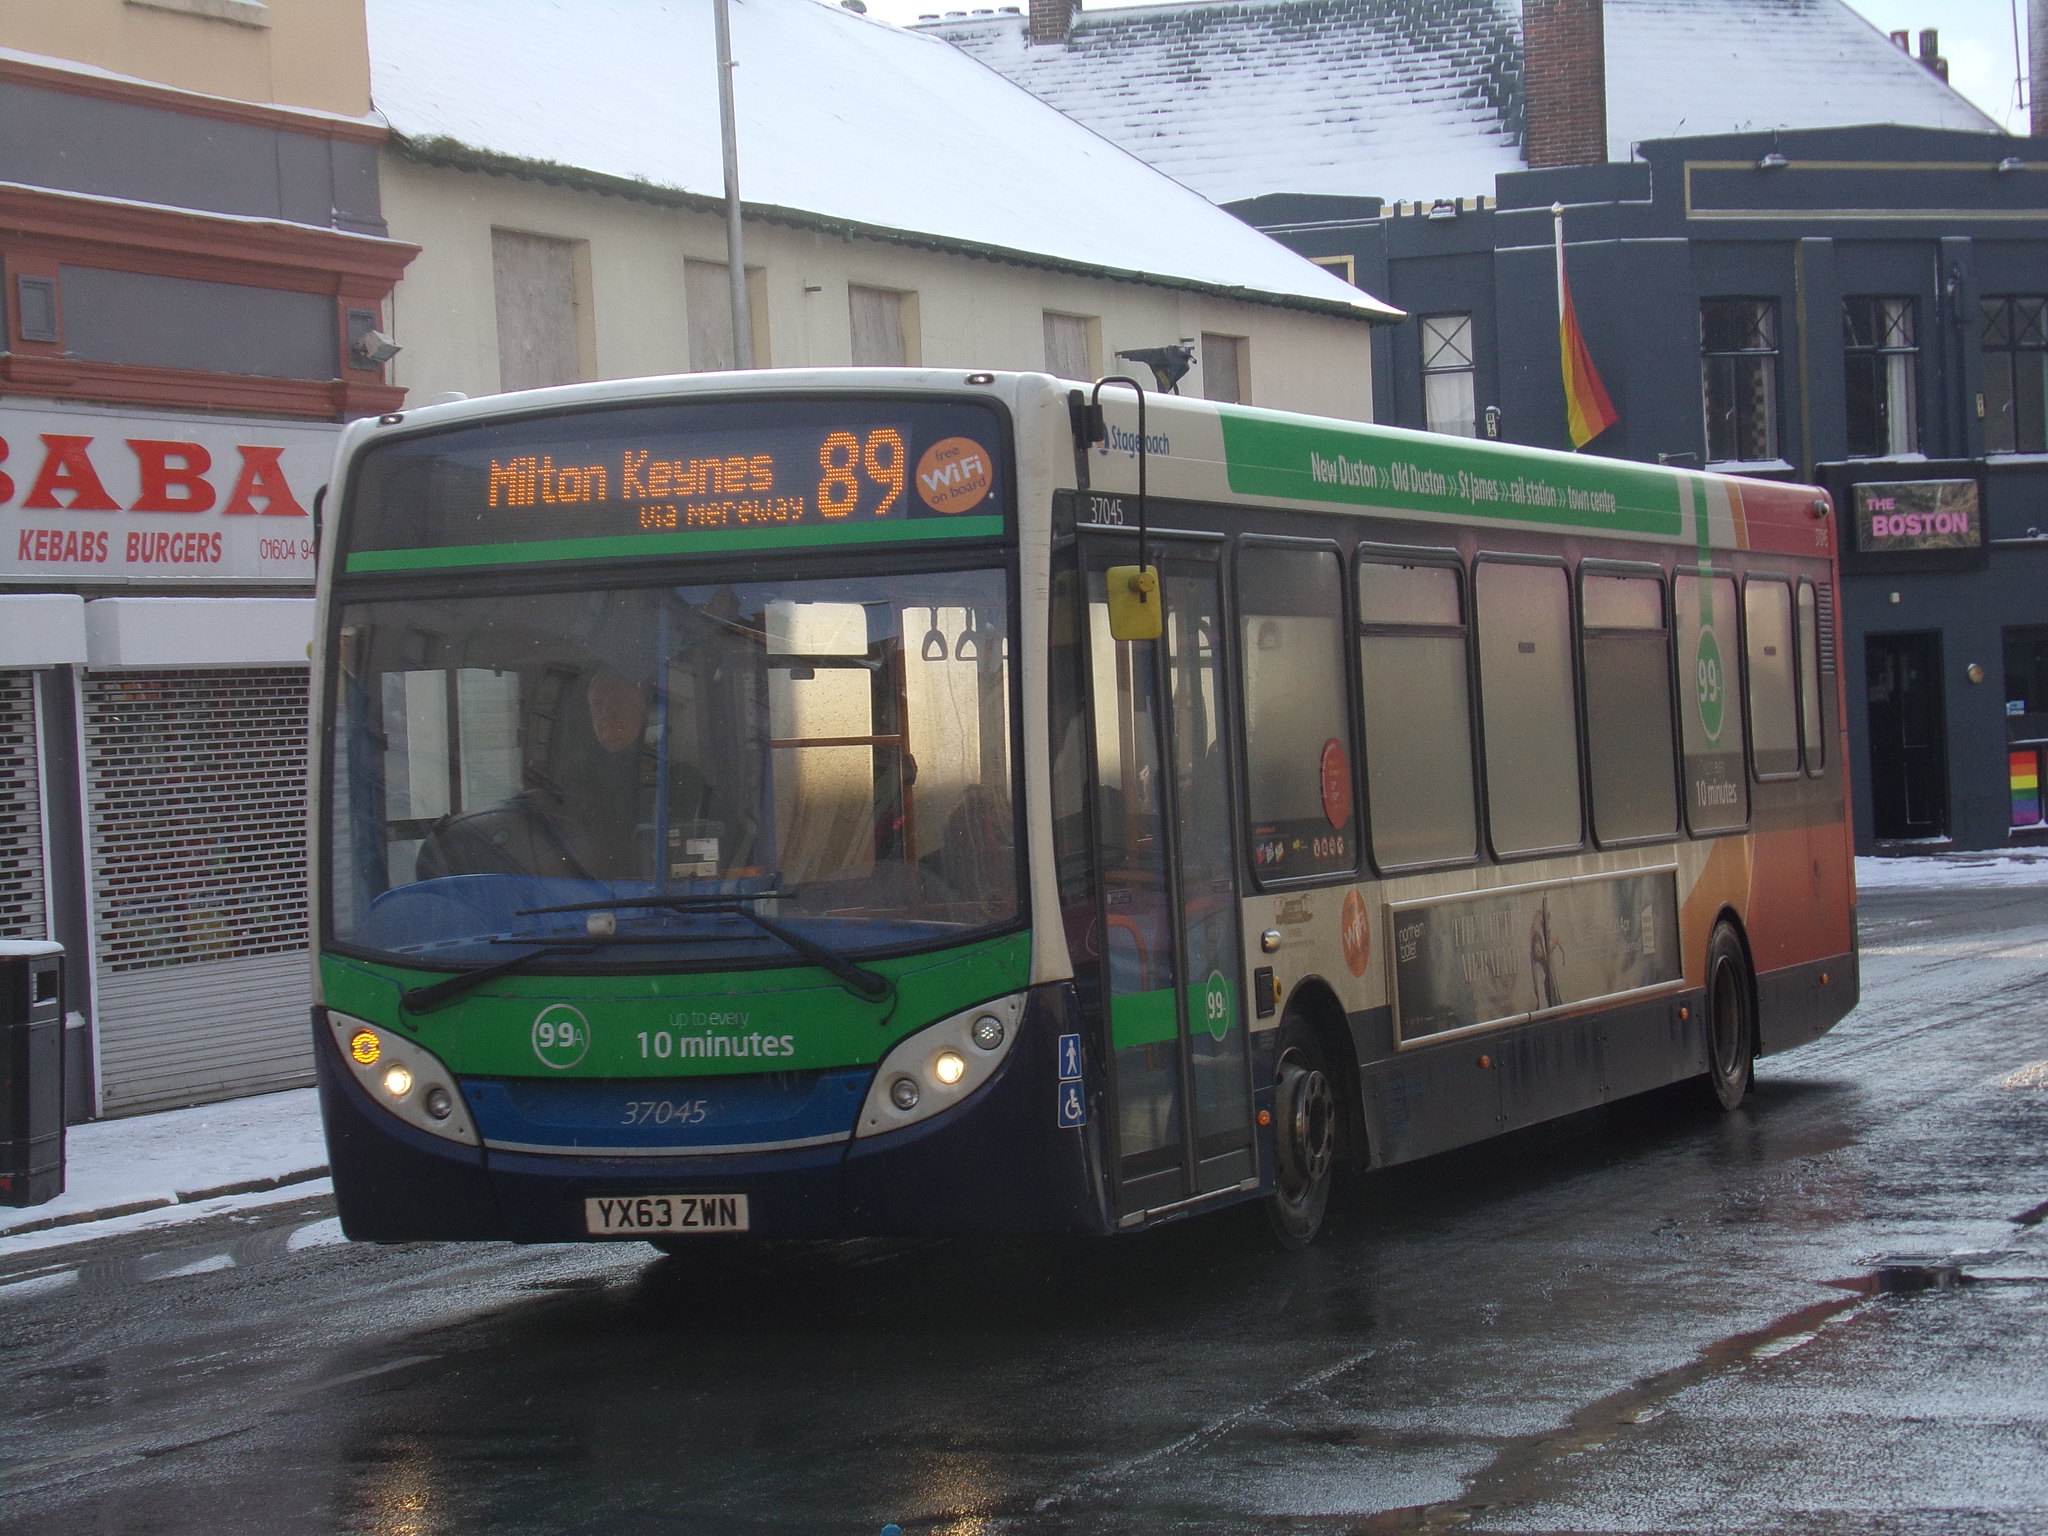 Milton Keynes bus 89